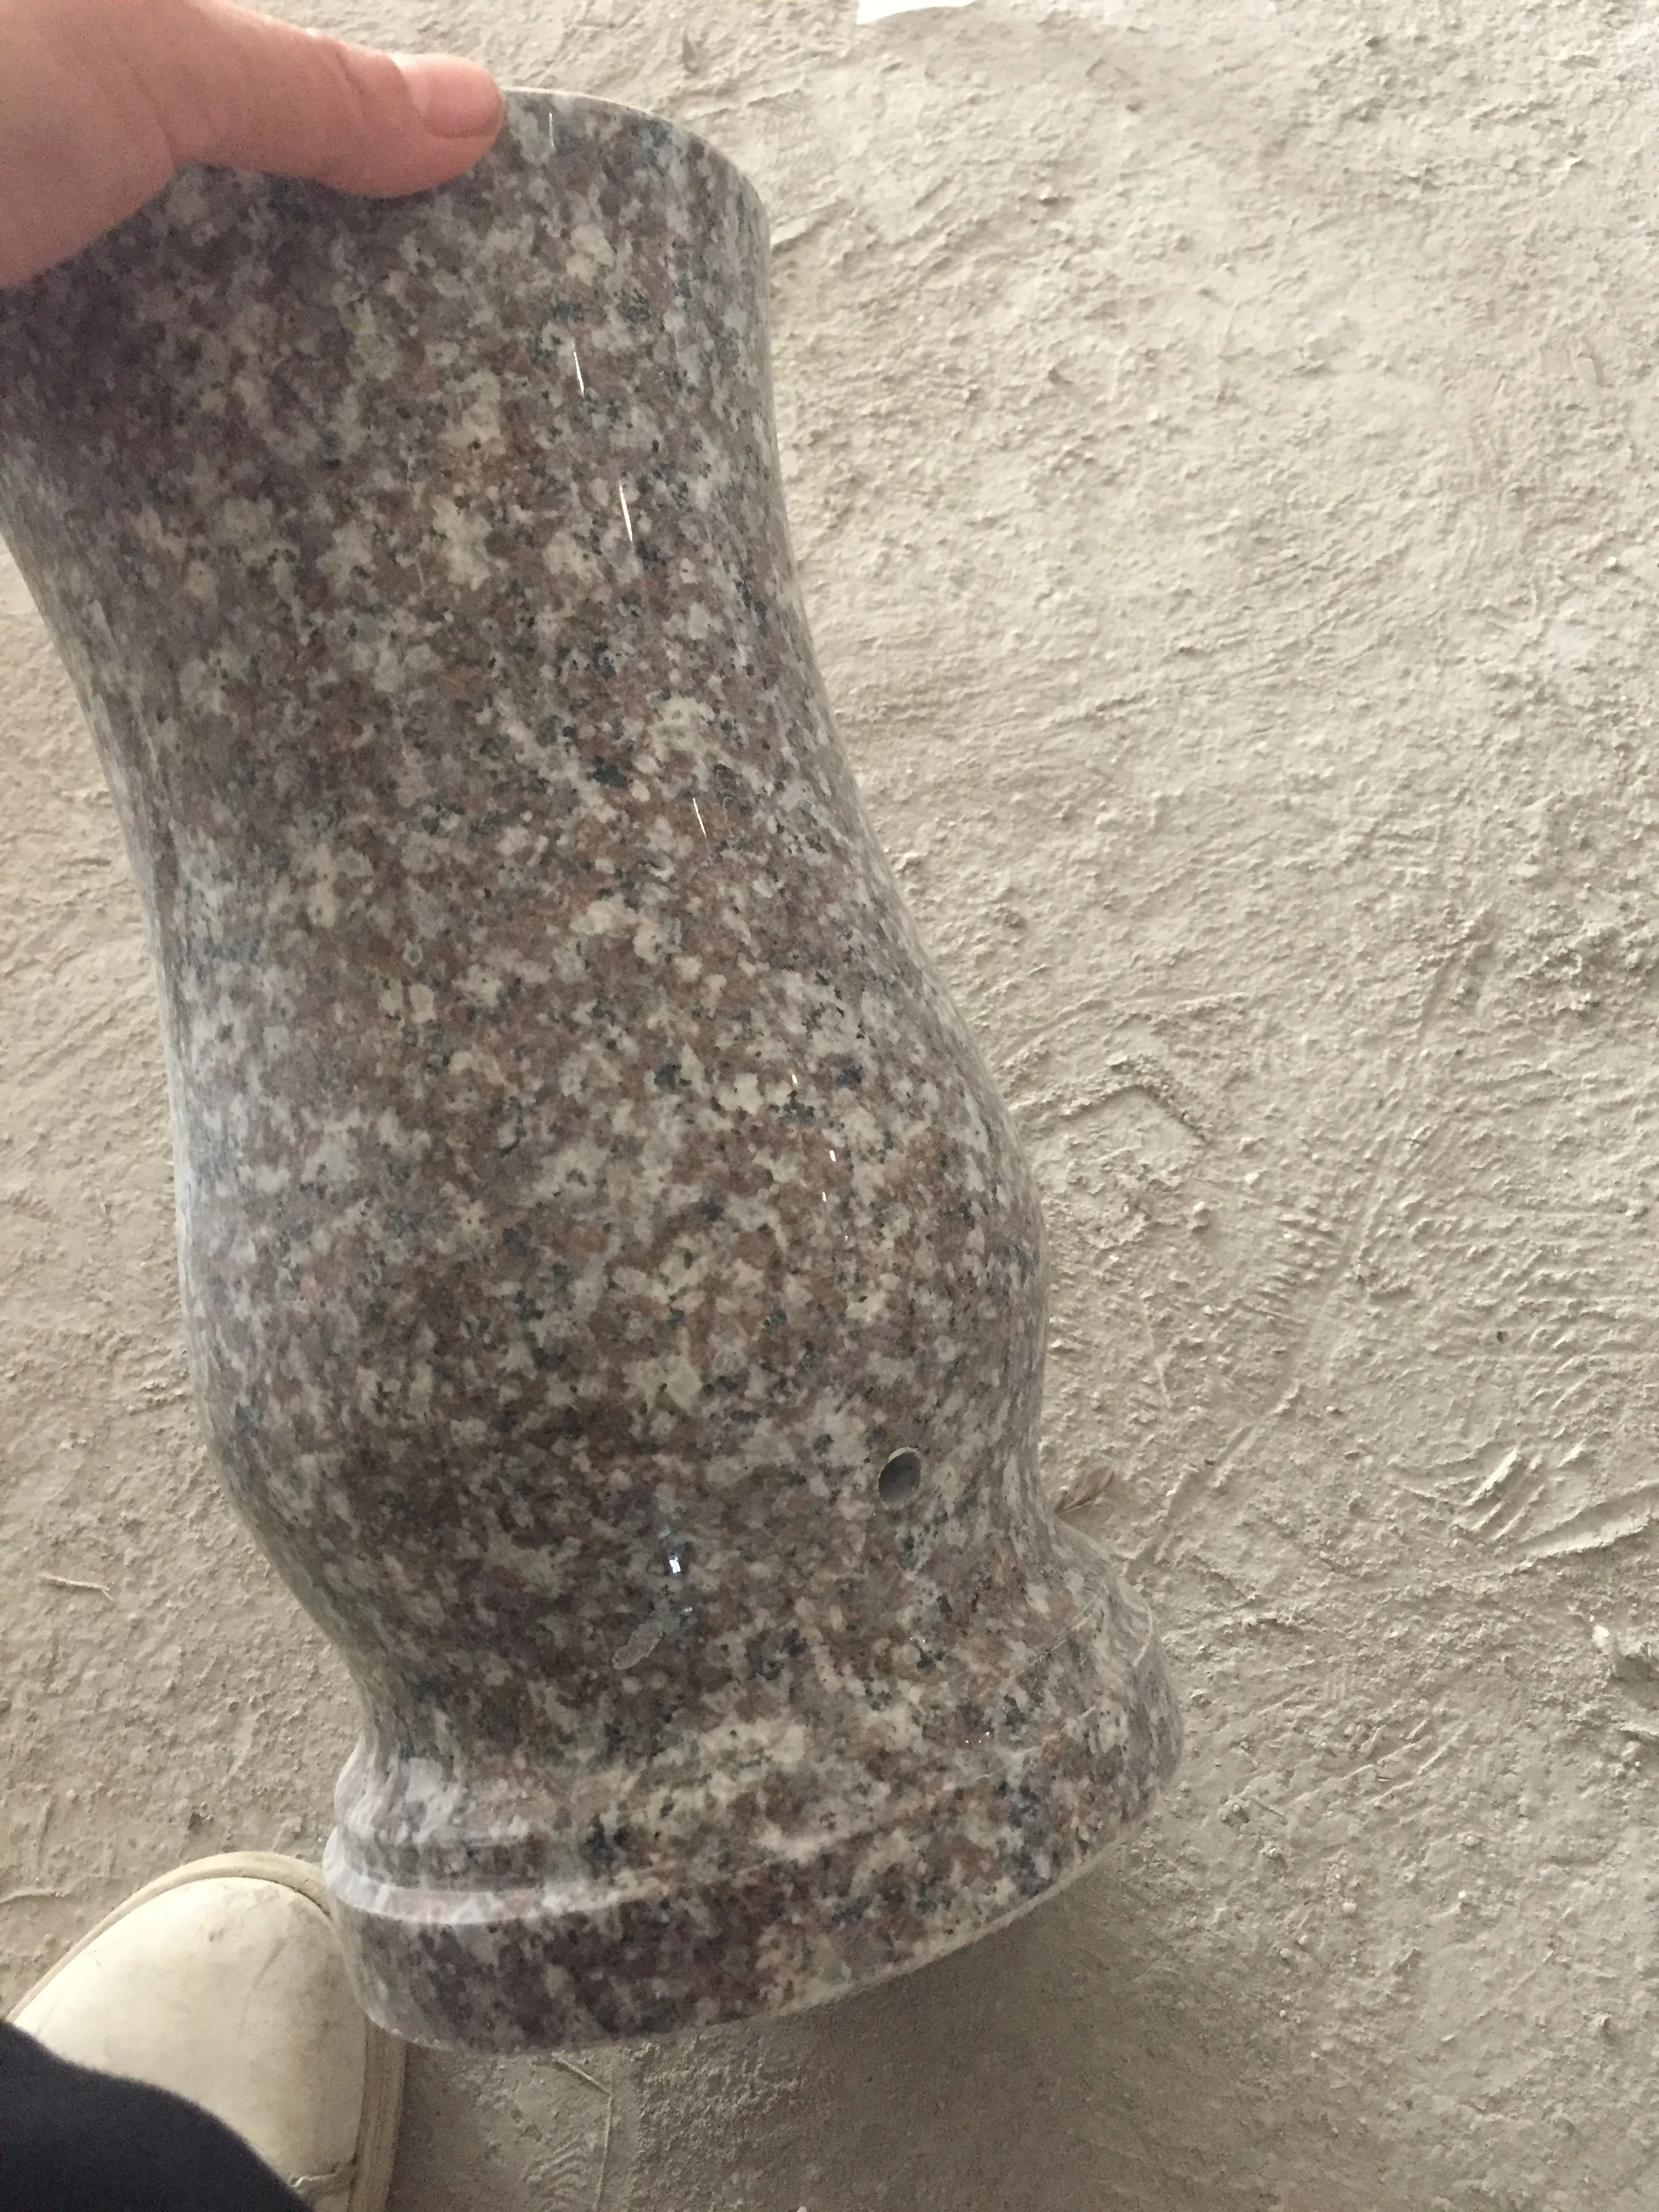 Vase for Granite Tombstone Price